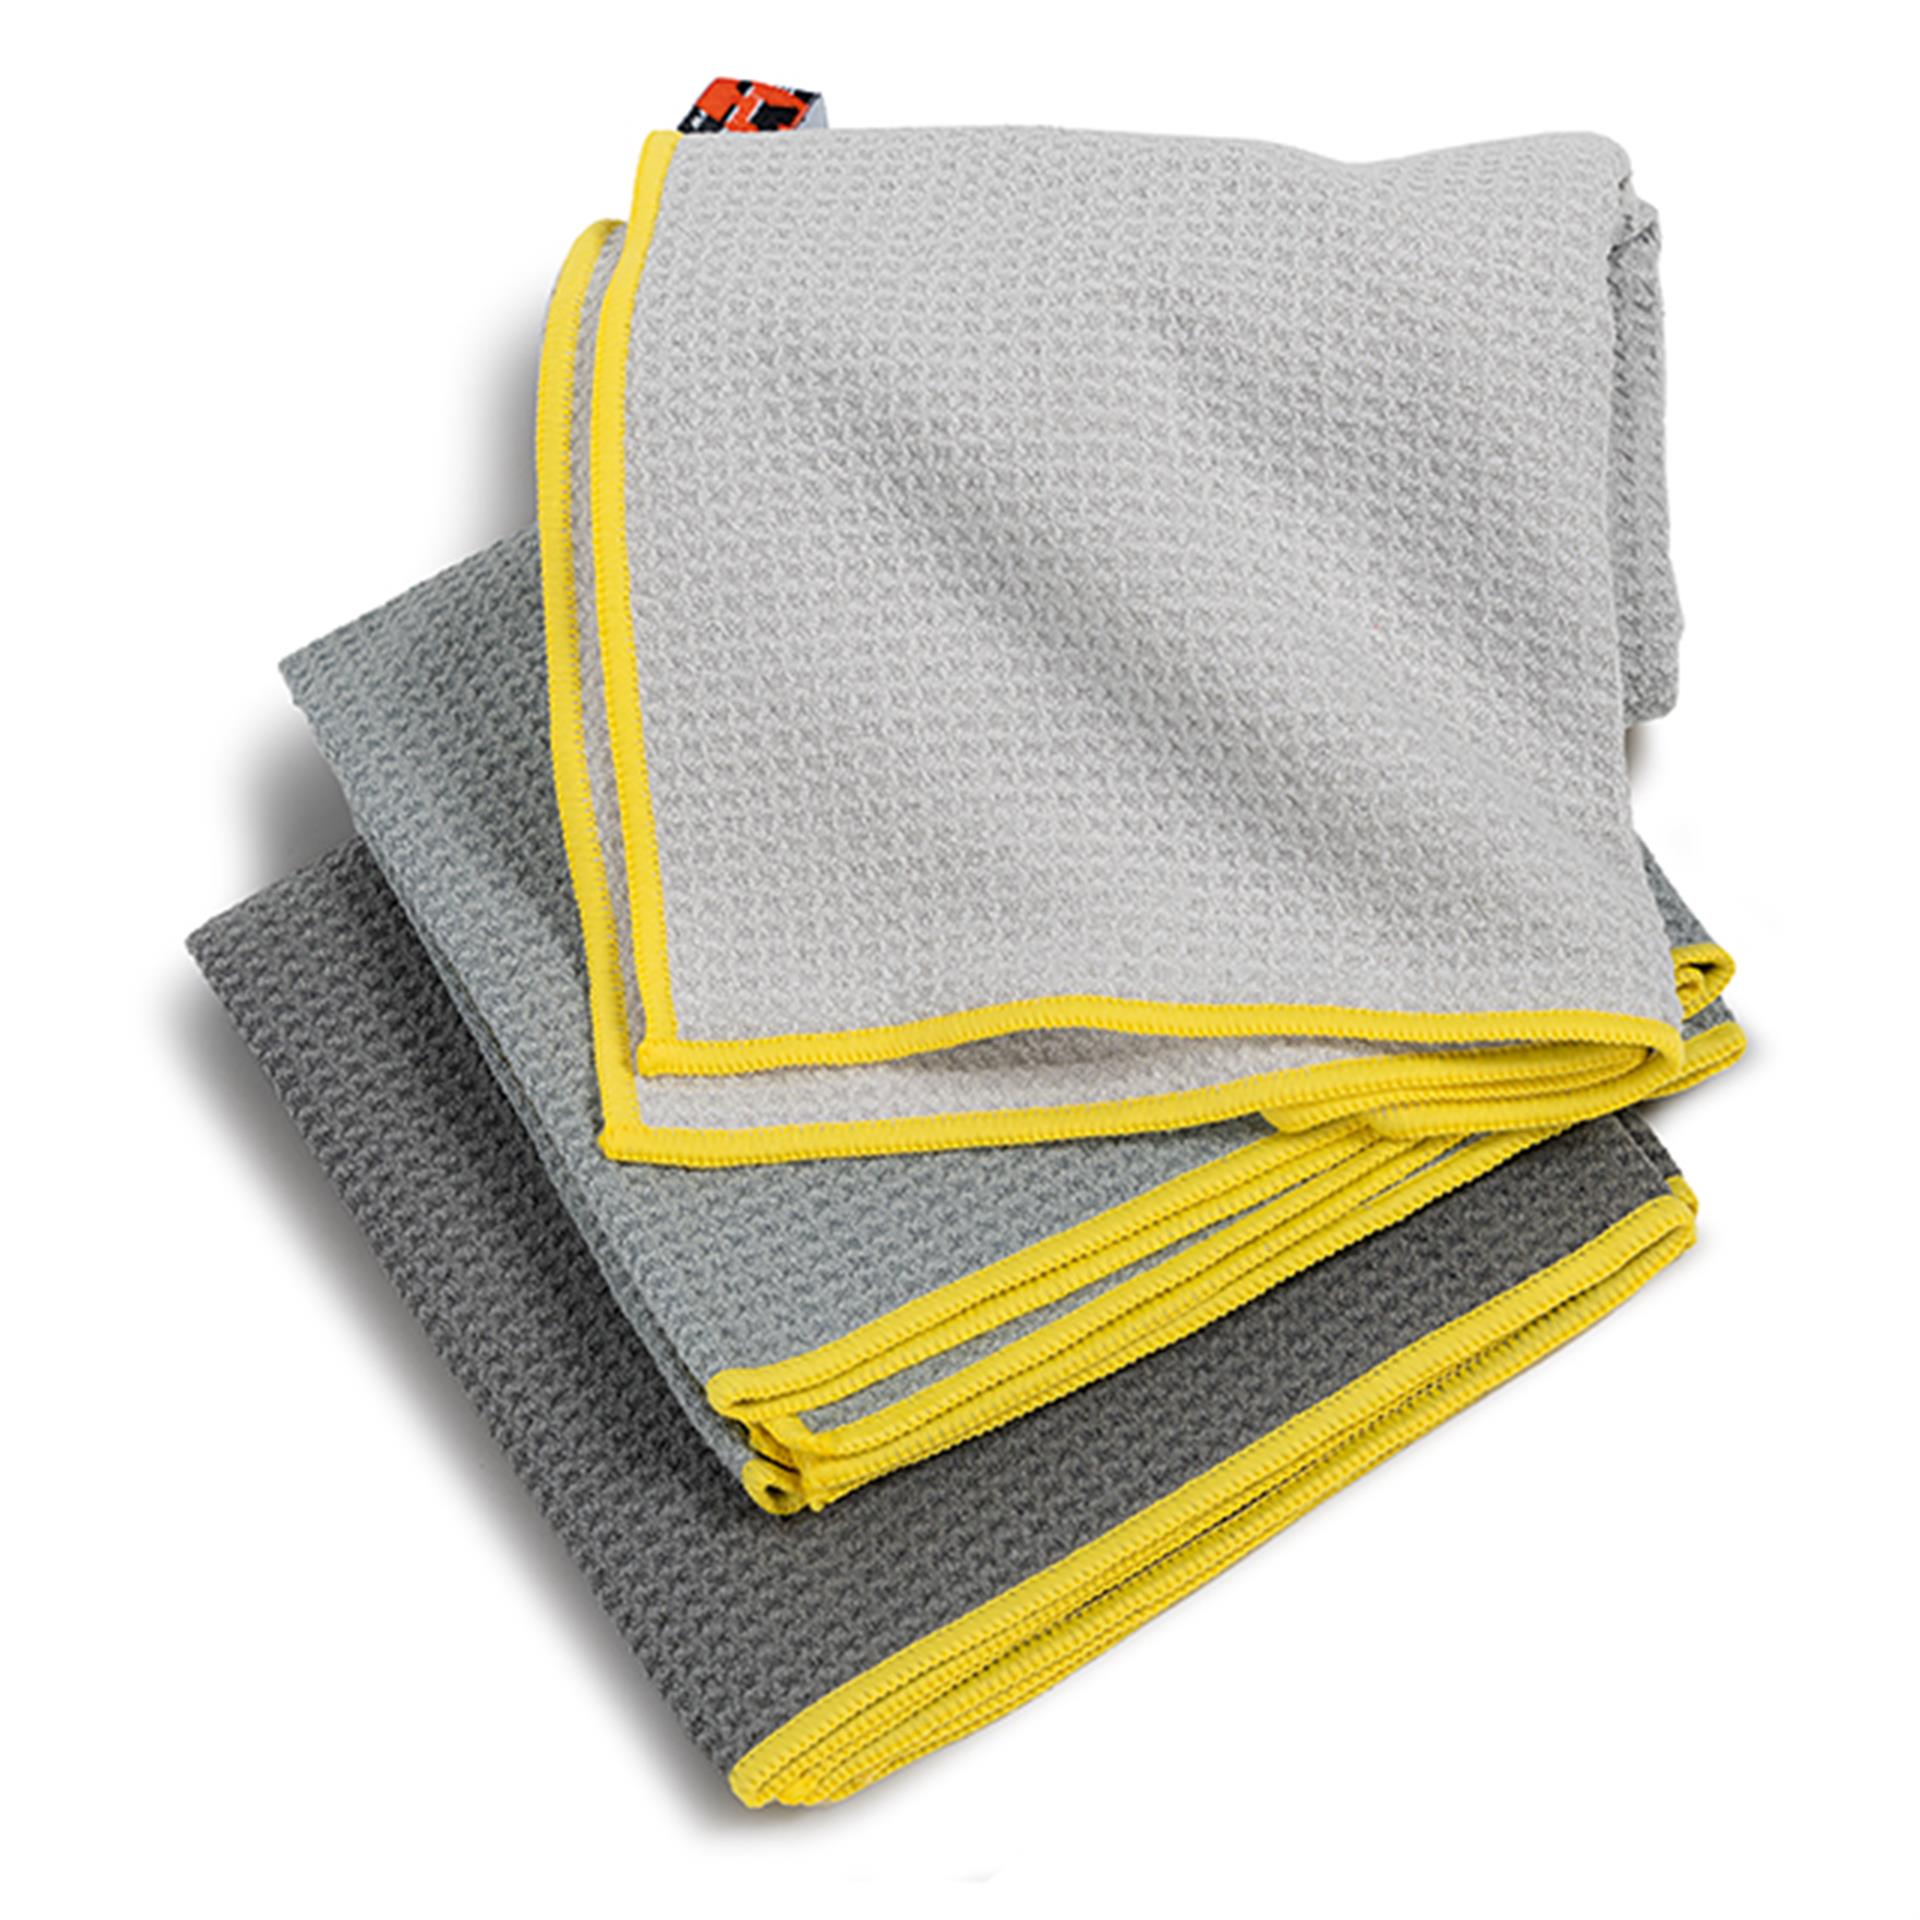 Maxtech Abtrocknungstücher Set Gray 3tlg. in Grautönen mit gelben Rändern